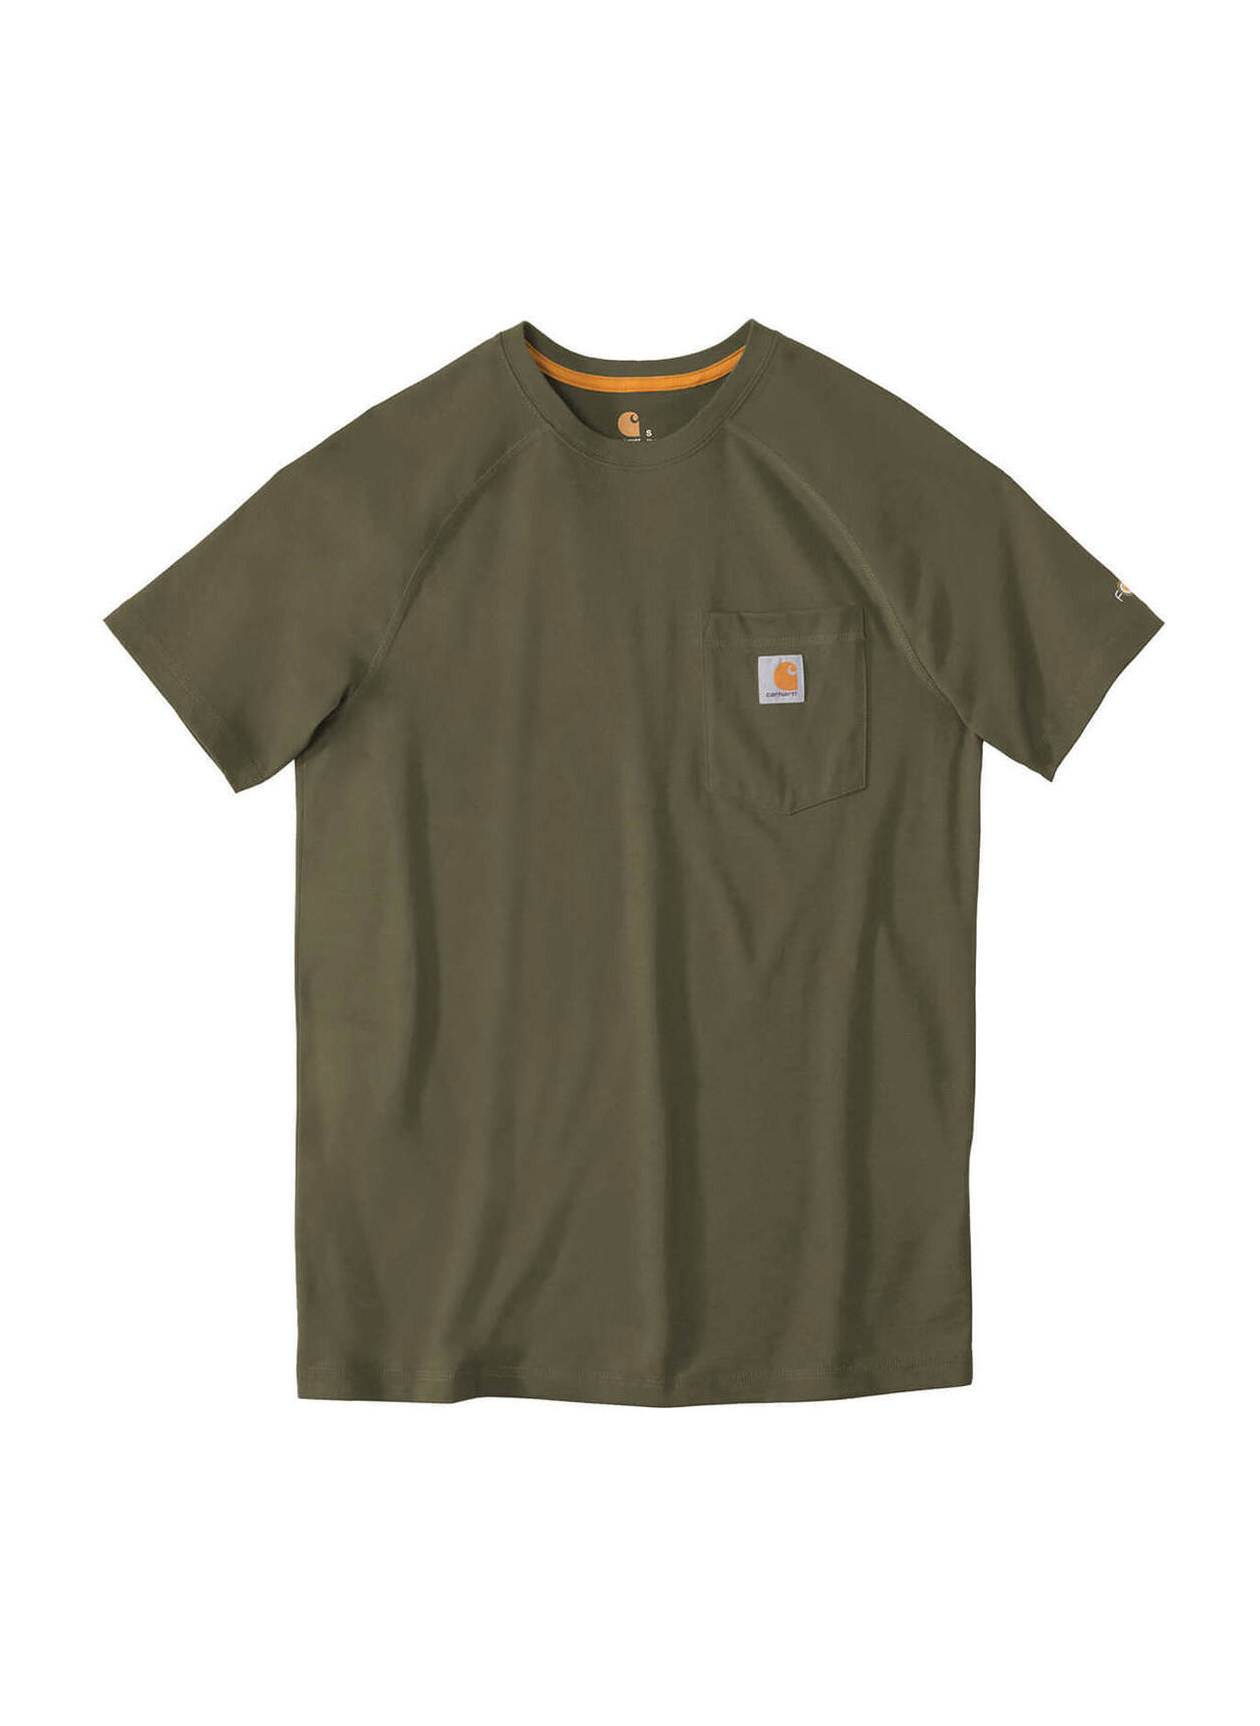 Moss Carhartt Force Cotton Delmont T-Shirt Men's